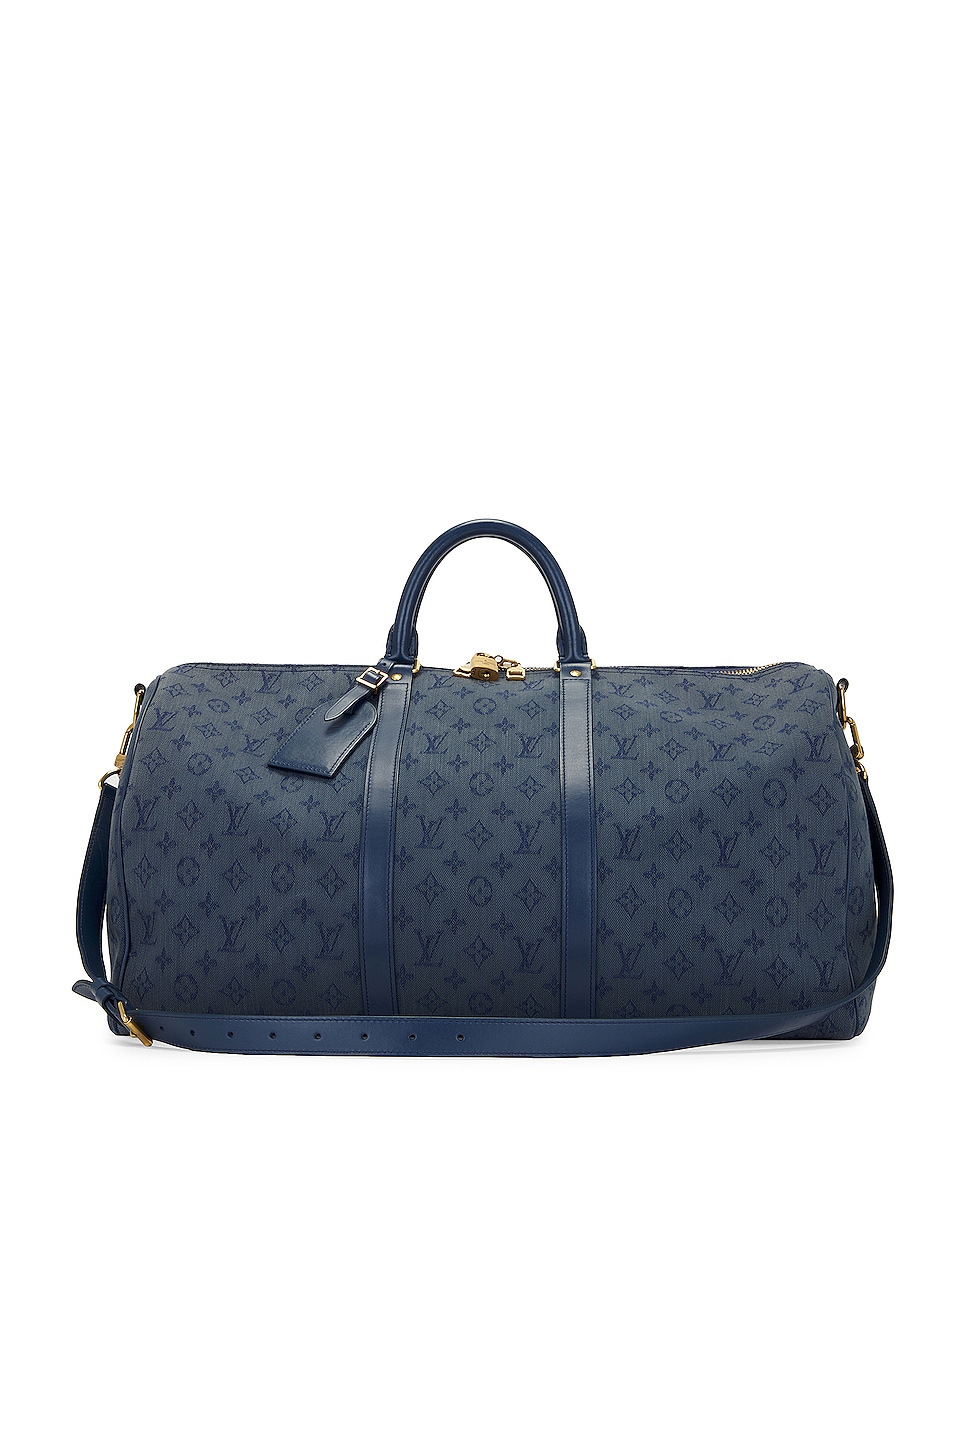 Louis Vuitton Loop Monogram Denim Jacquard Baguette Bag